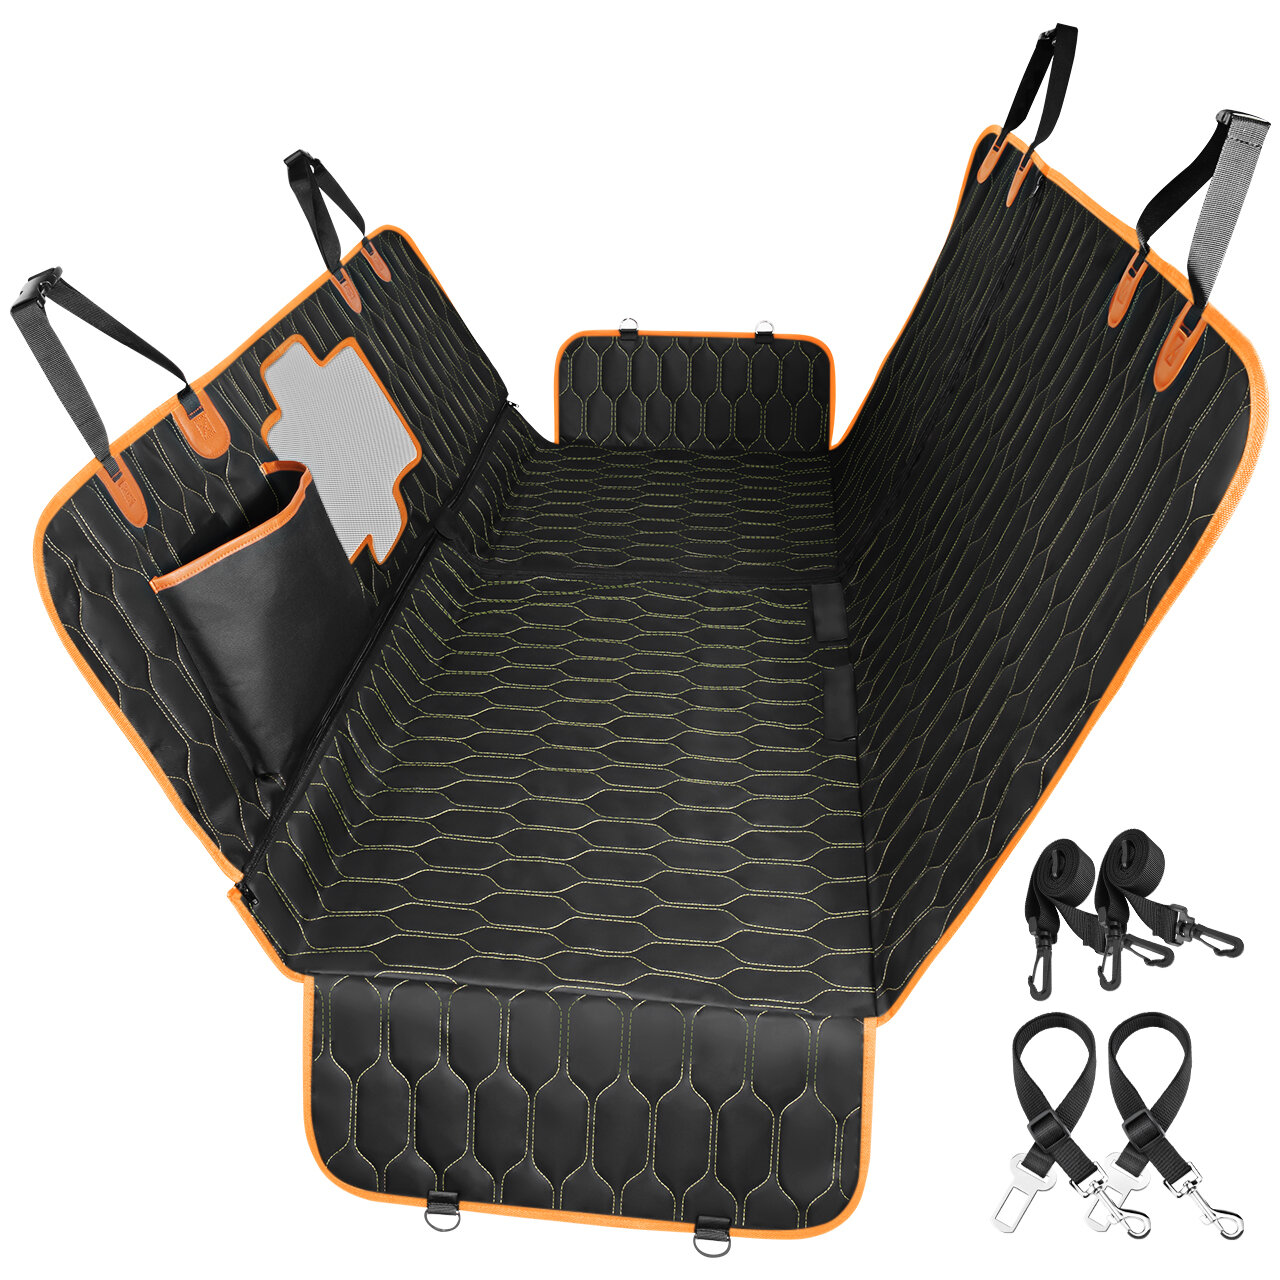 https://assets.wfcdn.com/im/43350537/compr-r85/1731/173160896/convertible-dog-hammock-scratch-proof-pet-car-seat-cover.jpg